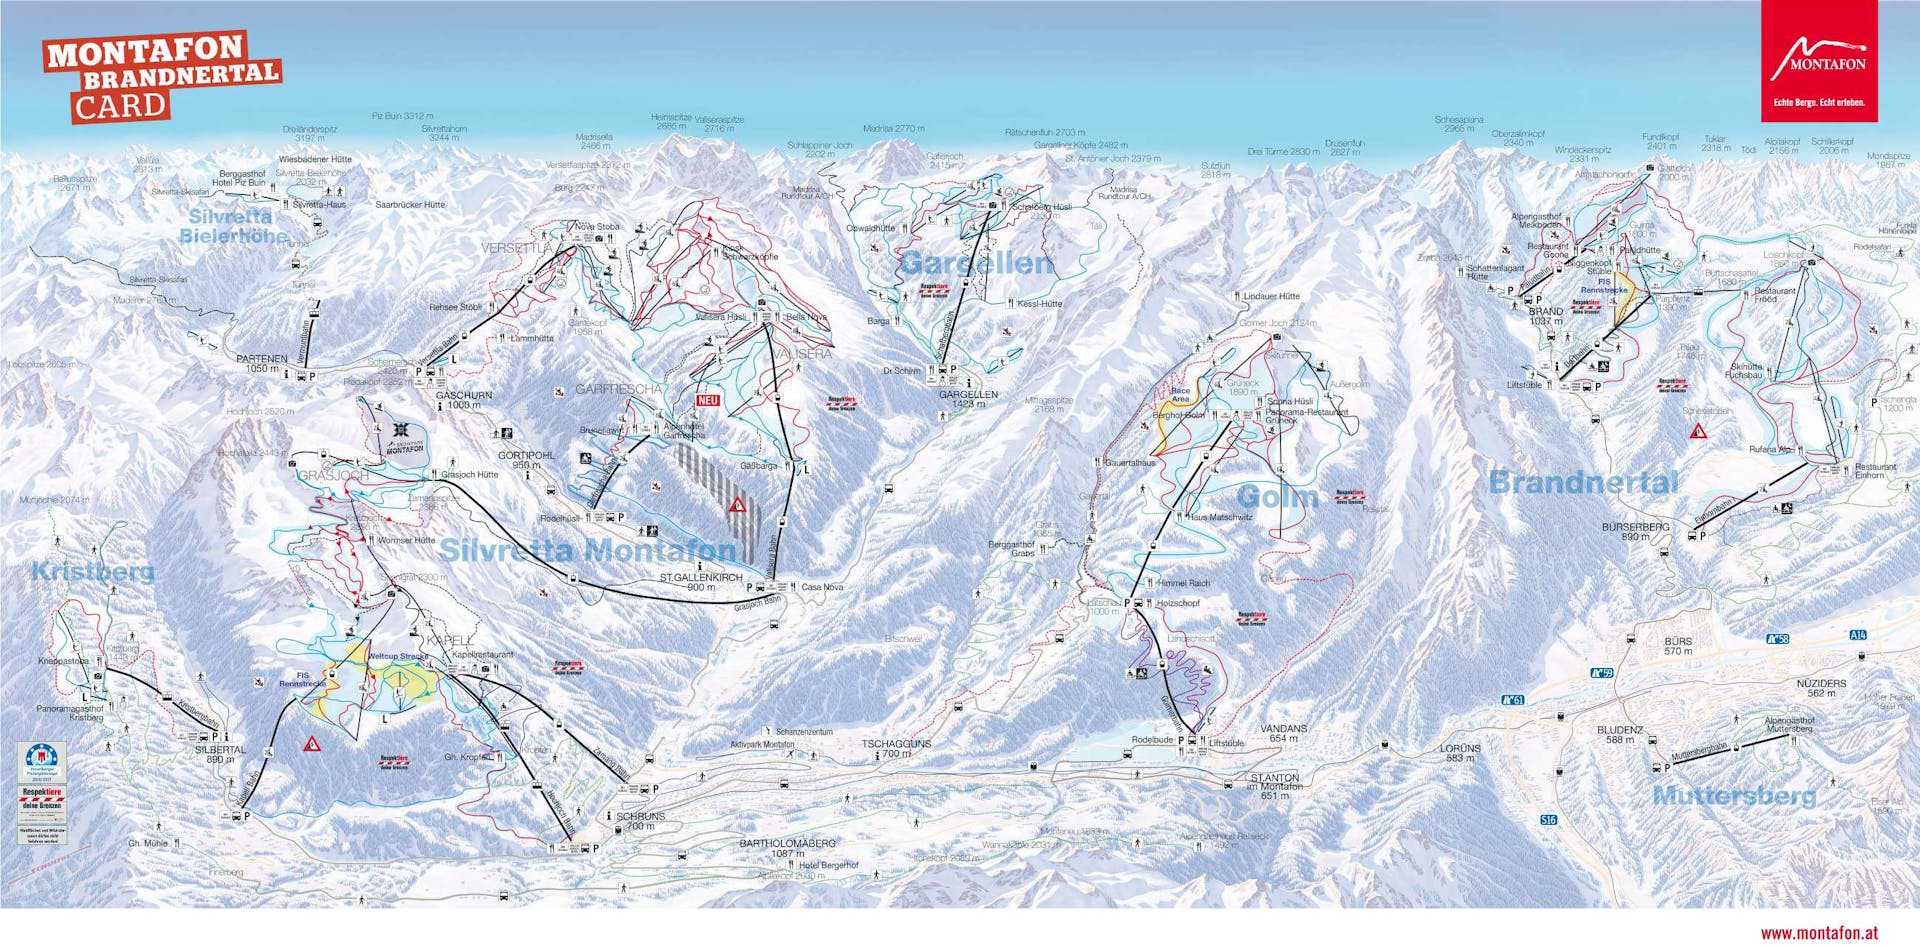 Silvretta Montafon ski map